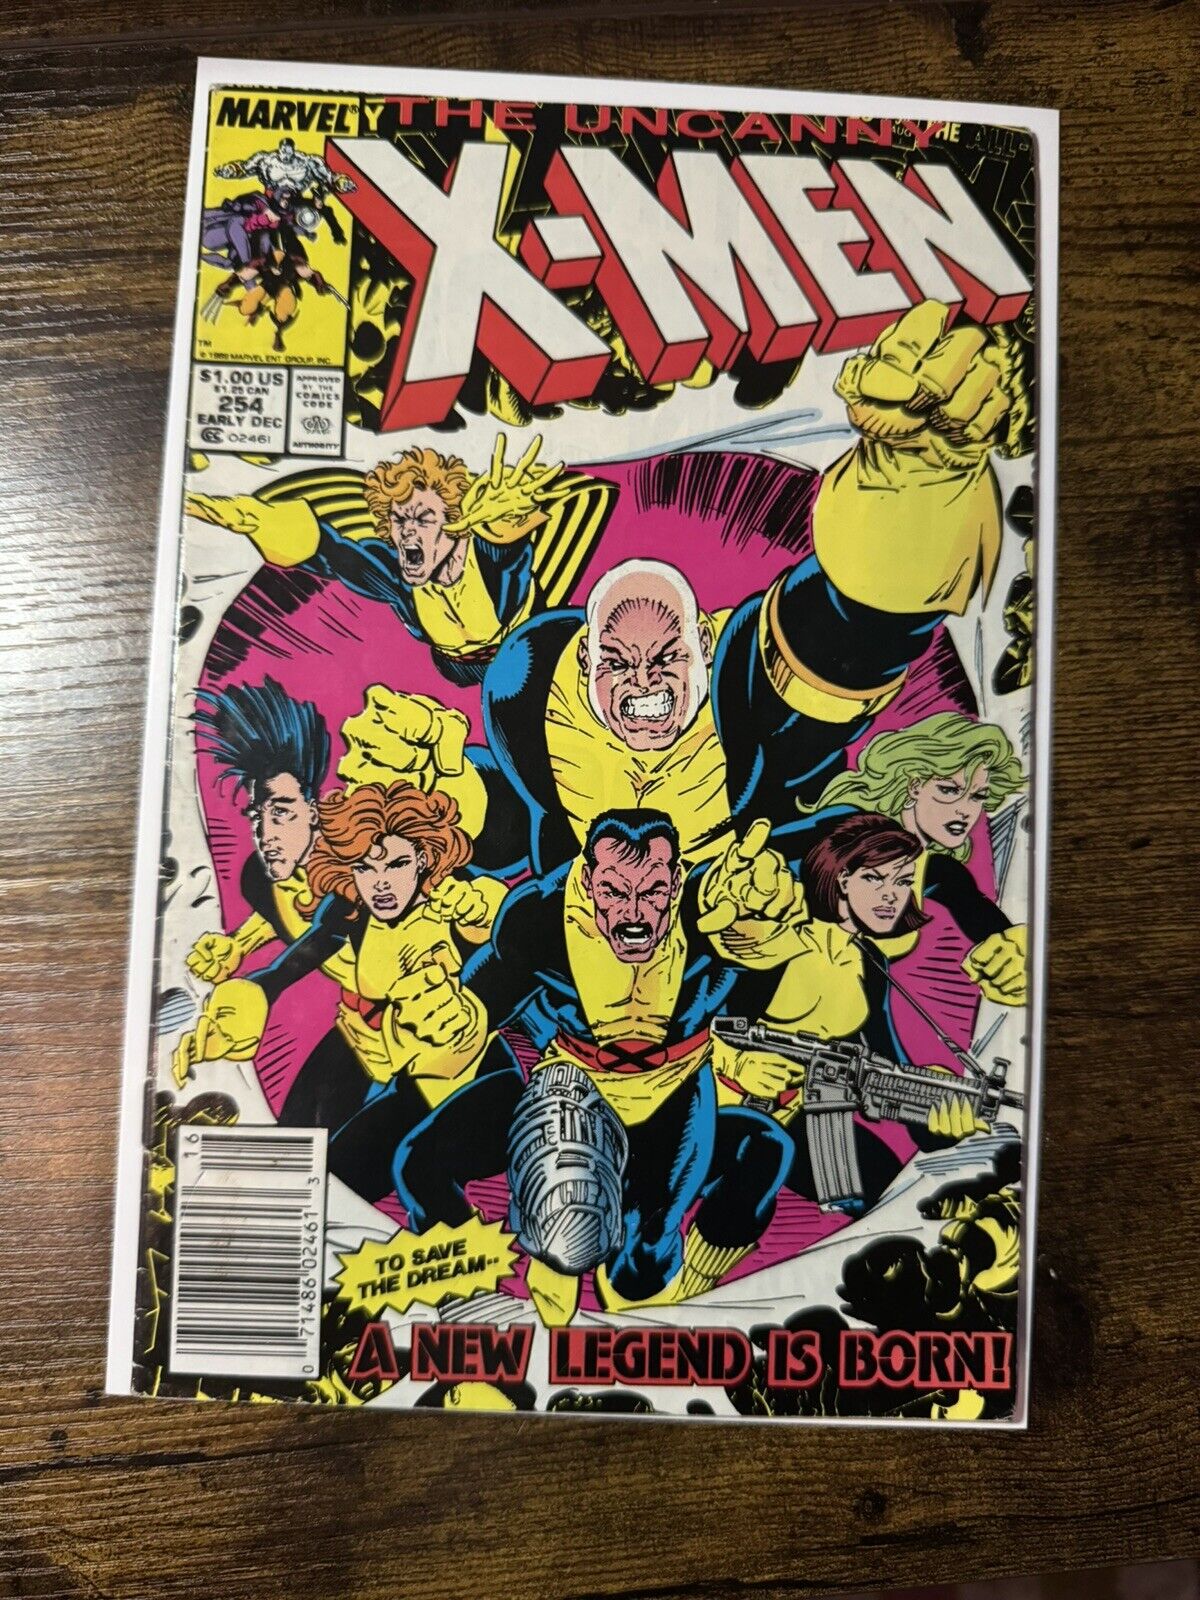 THE UNCANNY X-MEN #254 - Vol. 1 - Marvel Comics - 1989